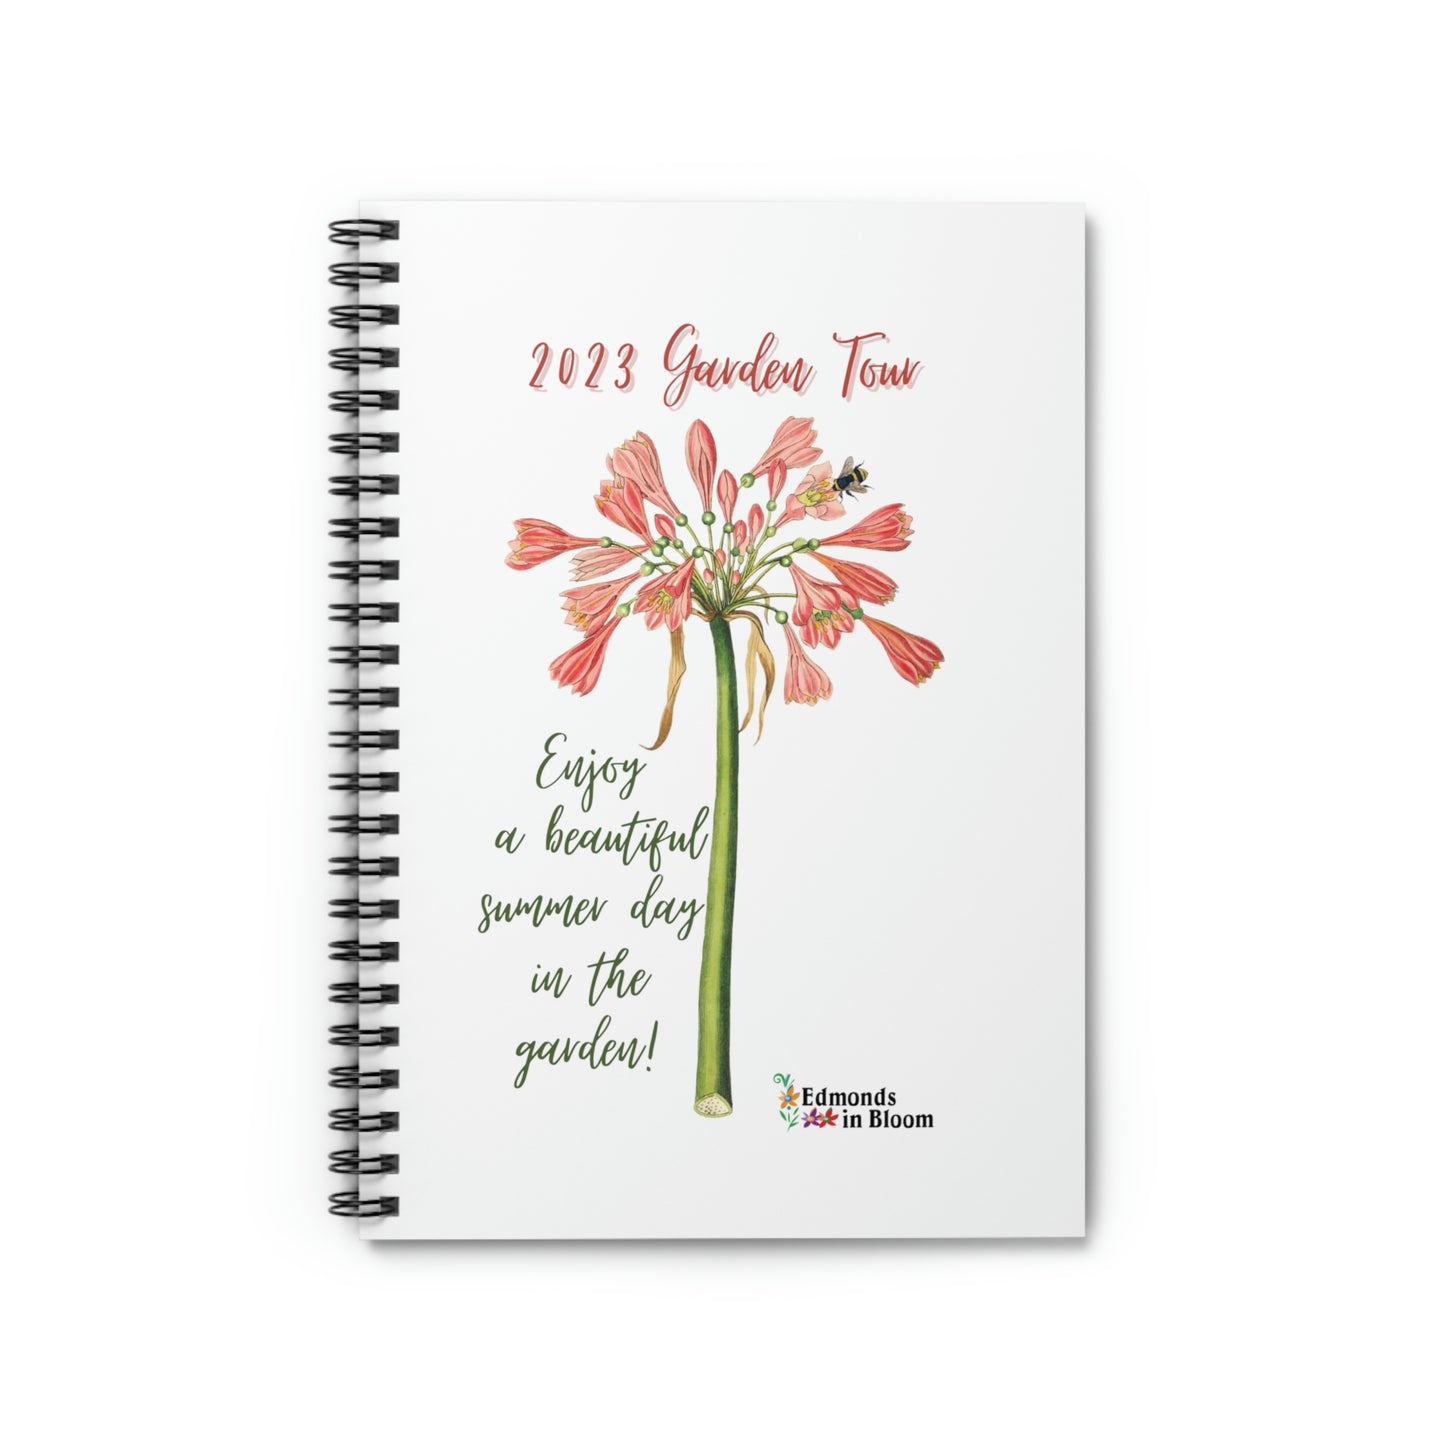 2023 Garden Tour Spiral Notebook - Ruled Line